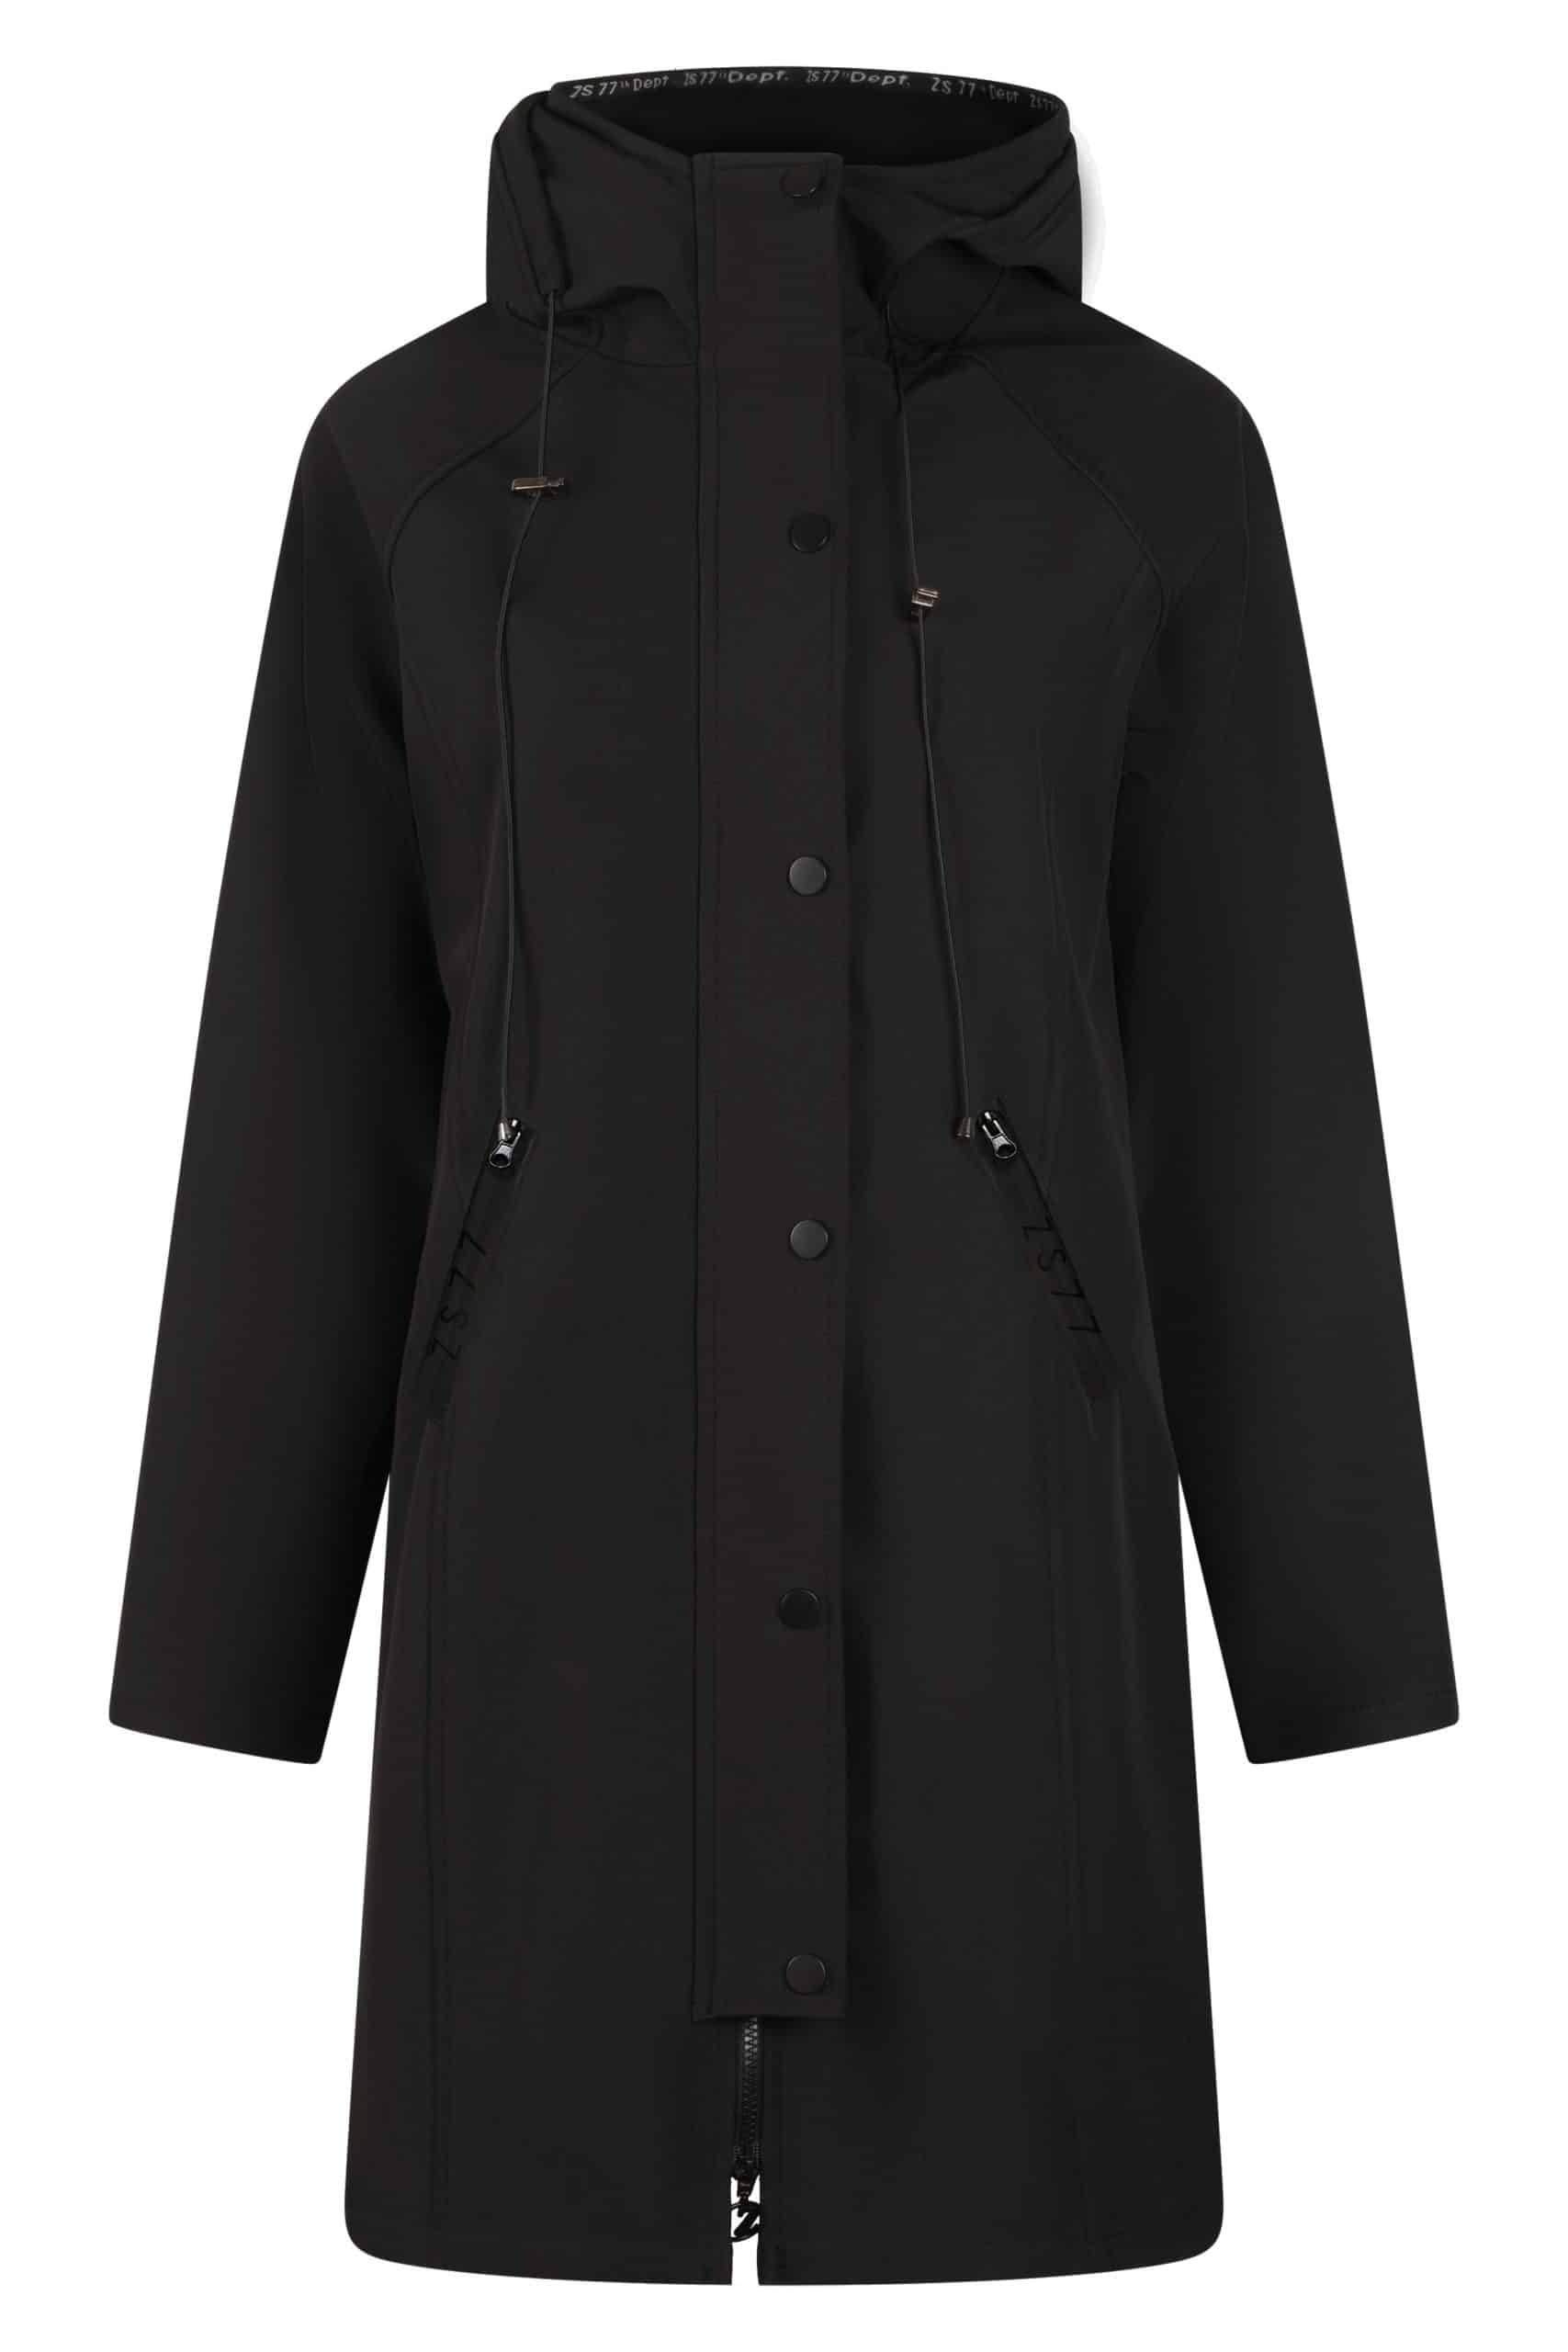 Zoso 224 Outdoor Softshell Coat Black